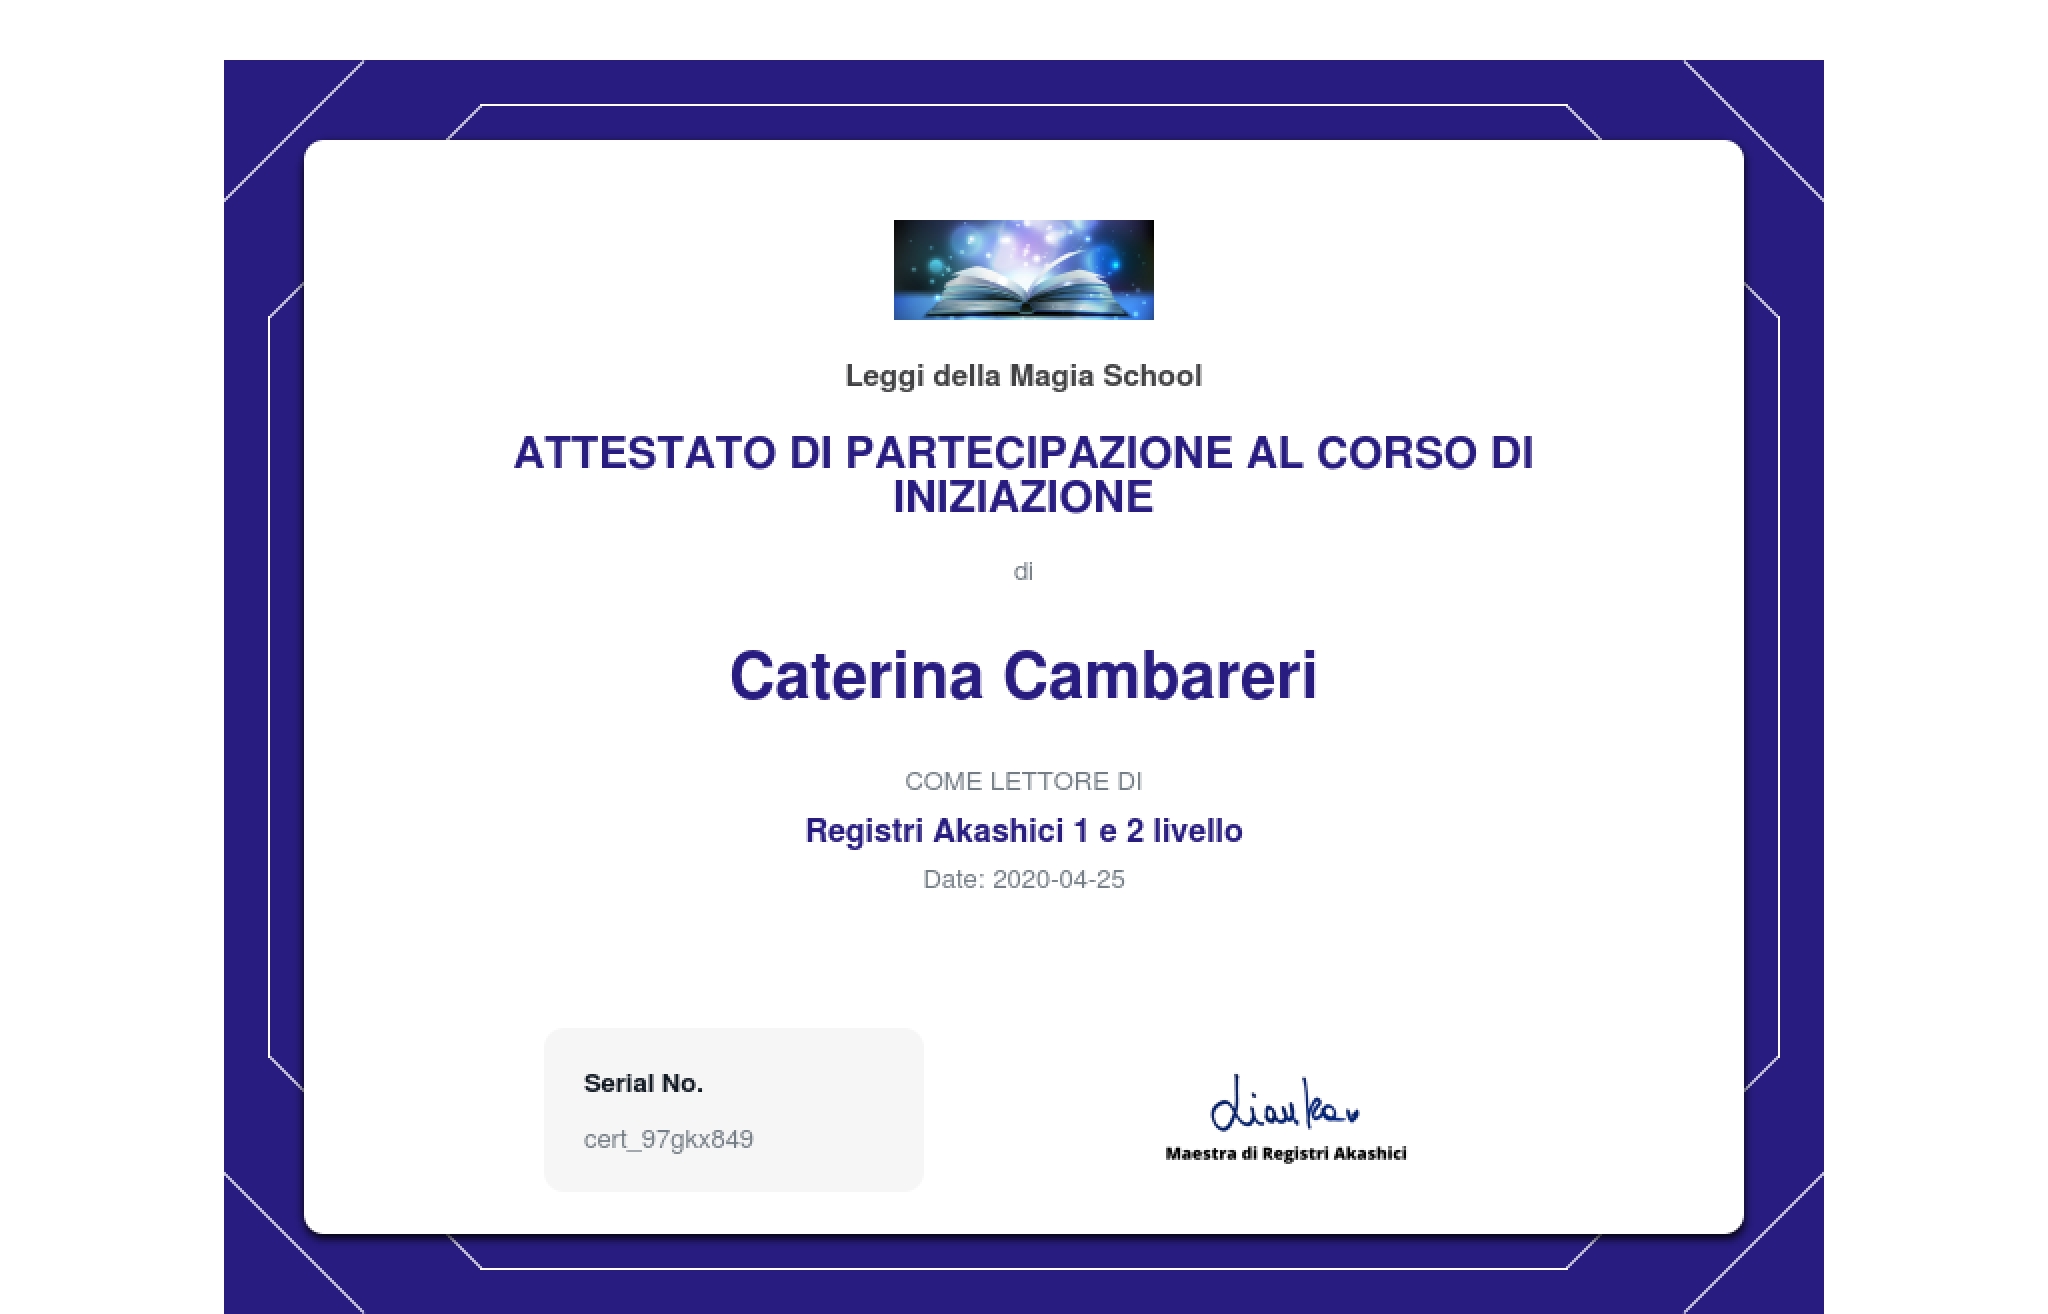 certificate of completion for registri akashici 1 e 2 livello page 0001 - Caterina Cambareri - Chi sono